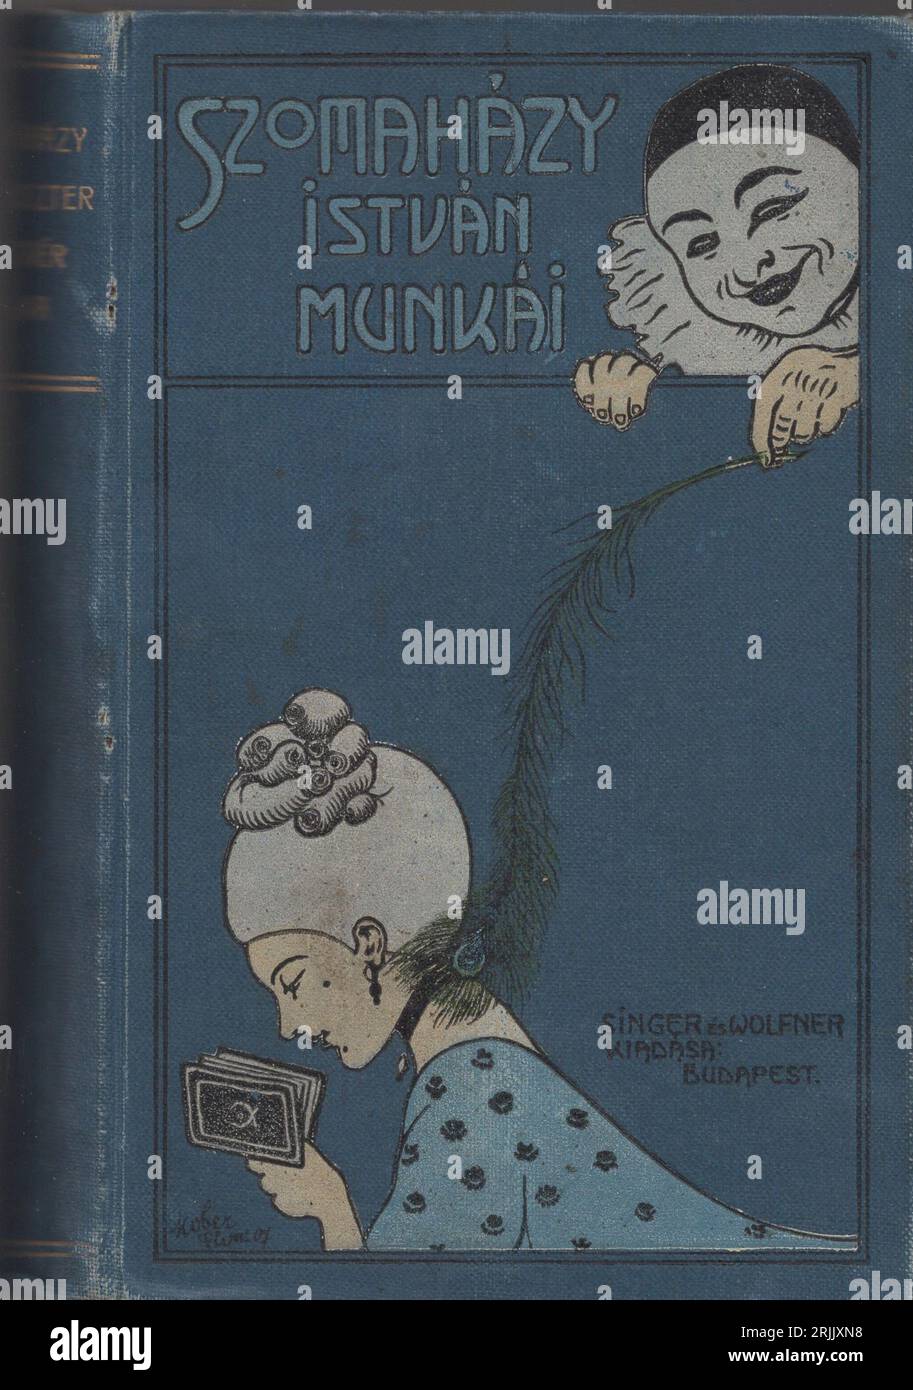 Belle illustration de couverture de livre art nouveau par Singer publié et Wolfner Budapest, Szomaházy István munkái. Harlequien joue avec une poupée paysannat pour une jeune femme liseuse : Pierrot clown chatouille le cou de la dame liseuse avec une plume de paon Banque D'Images